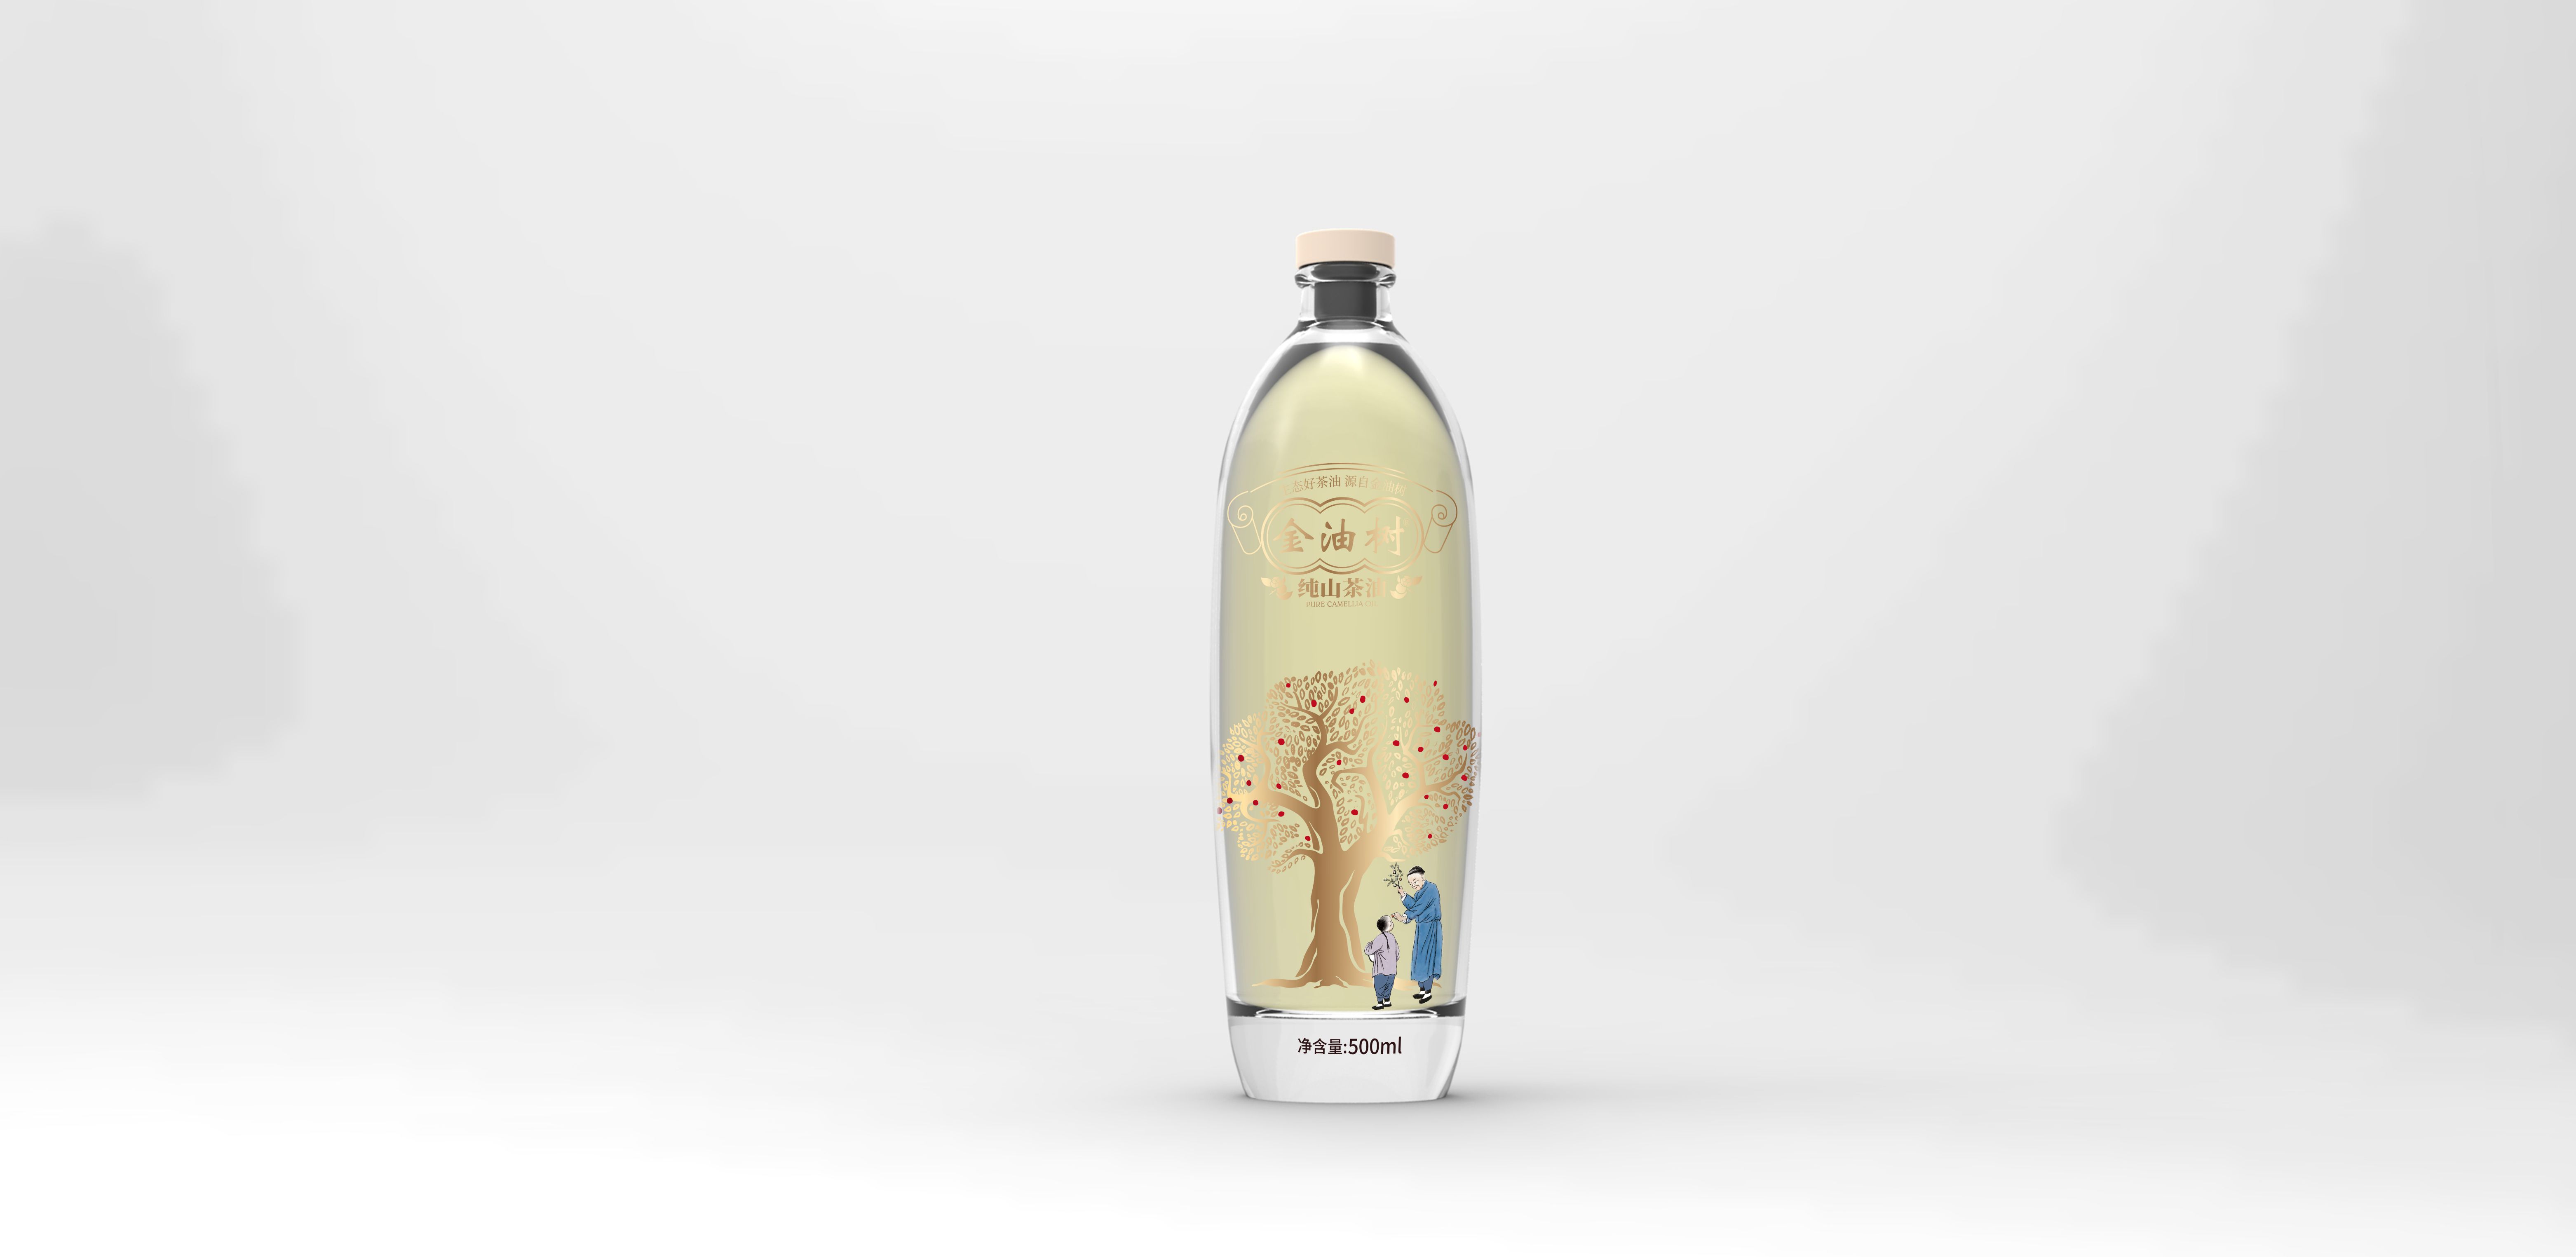 畅销桂林瓶型设计公司作品TOP3名单公开 